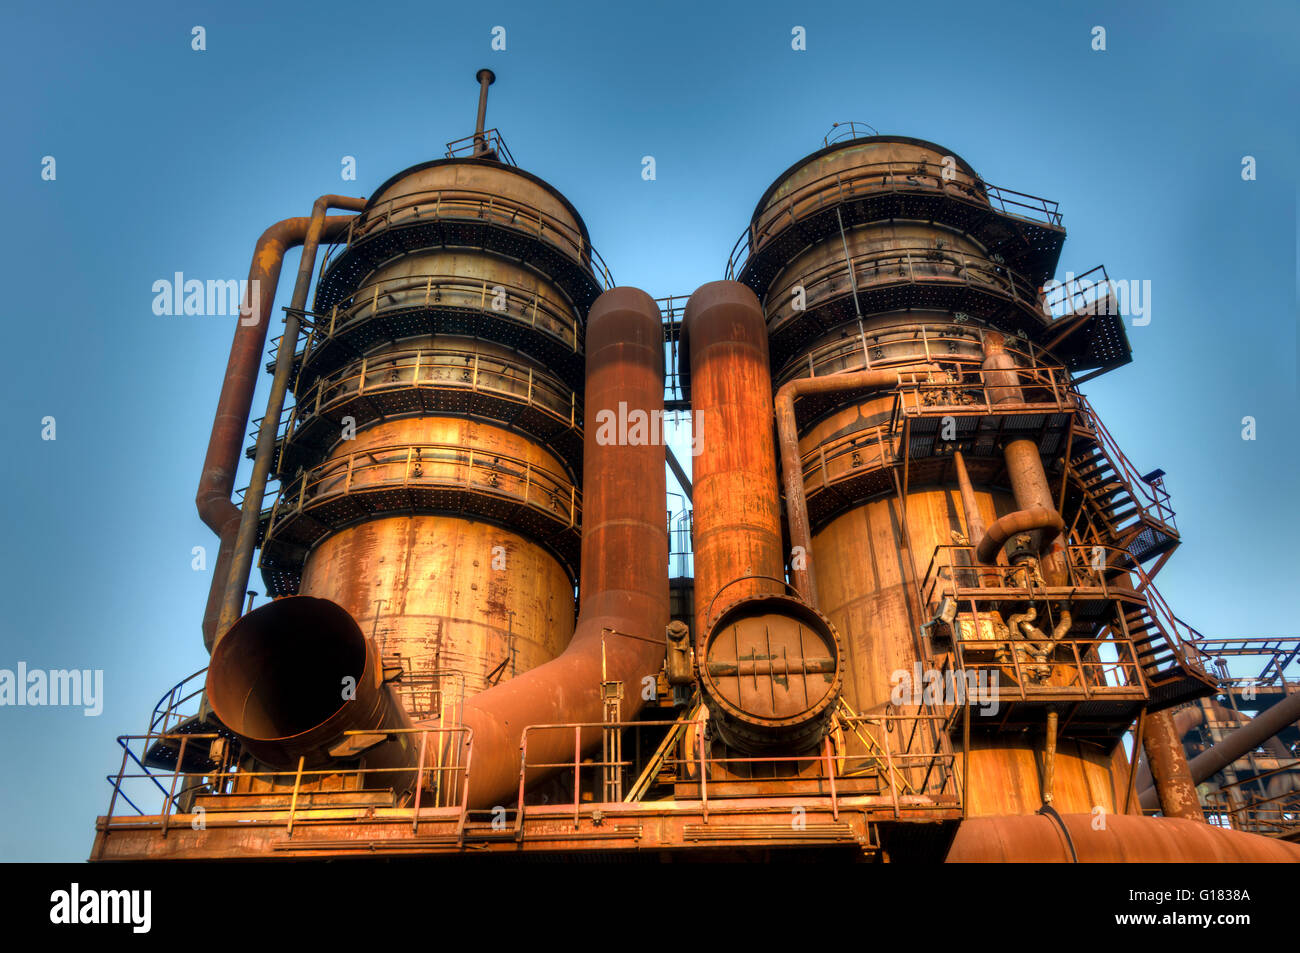 La planta de coque, los altos hornos y las demás instalaciones tecnológicas de la industria básica metalúrgica y energética Foto de stock